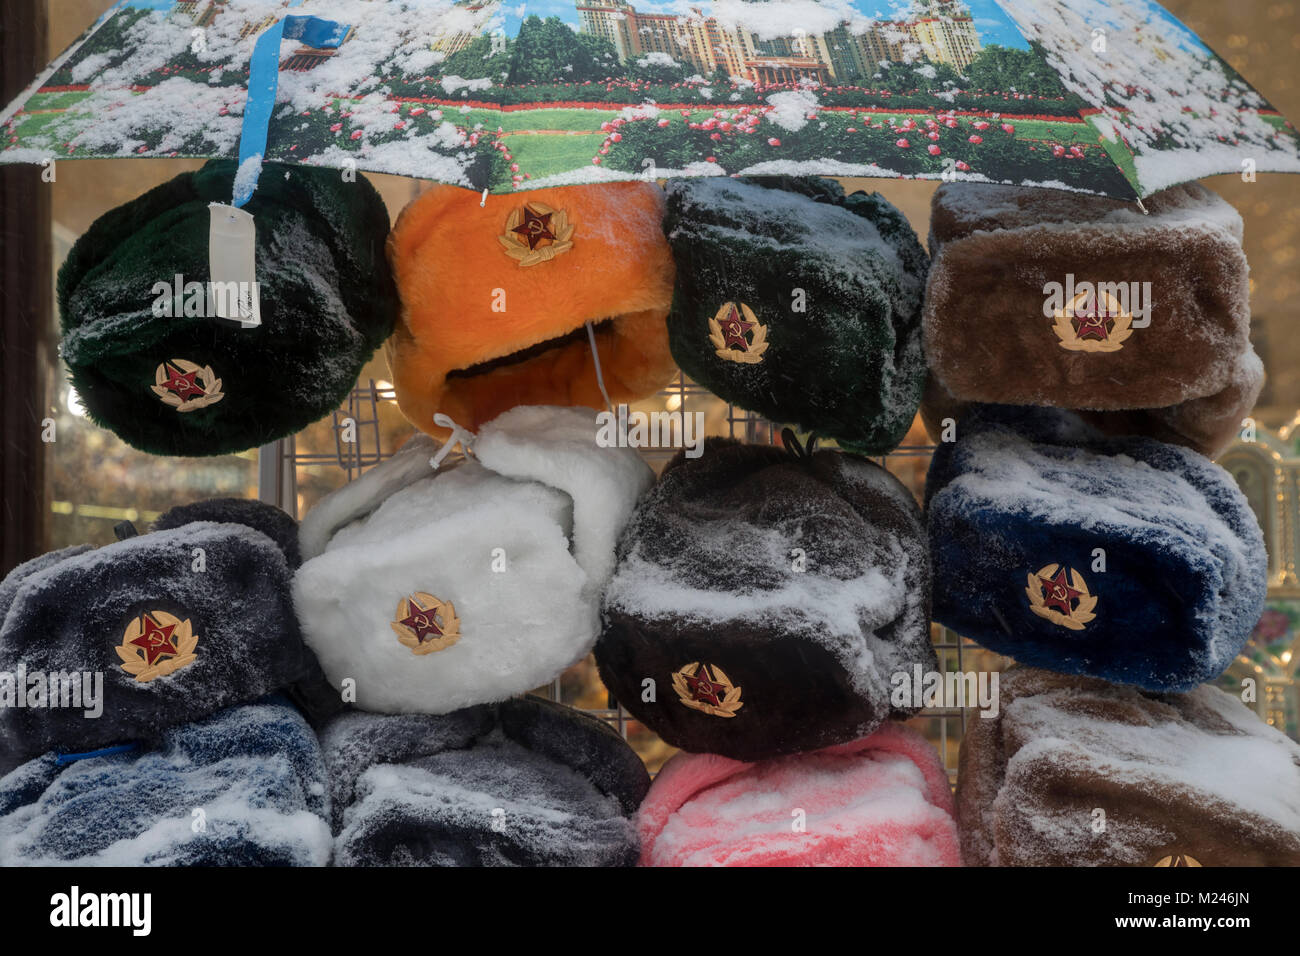 Moscou, Russie - 4 Février, 2018 : voir l'armée soviétique de chapeaux d'hiver du centre-ville de Moscou dans une boutique de souvenirs au cours de neige anormale dans la région de Moscou, Russie Crédit : Nikolay Vinokourov/Alamy Live News Banque D'Images